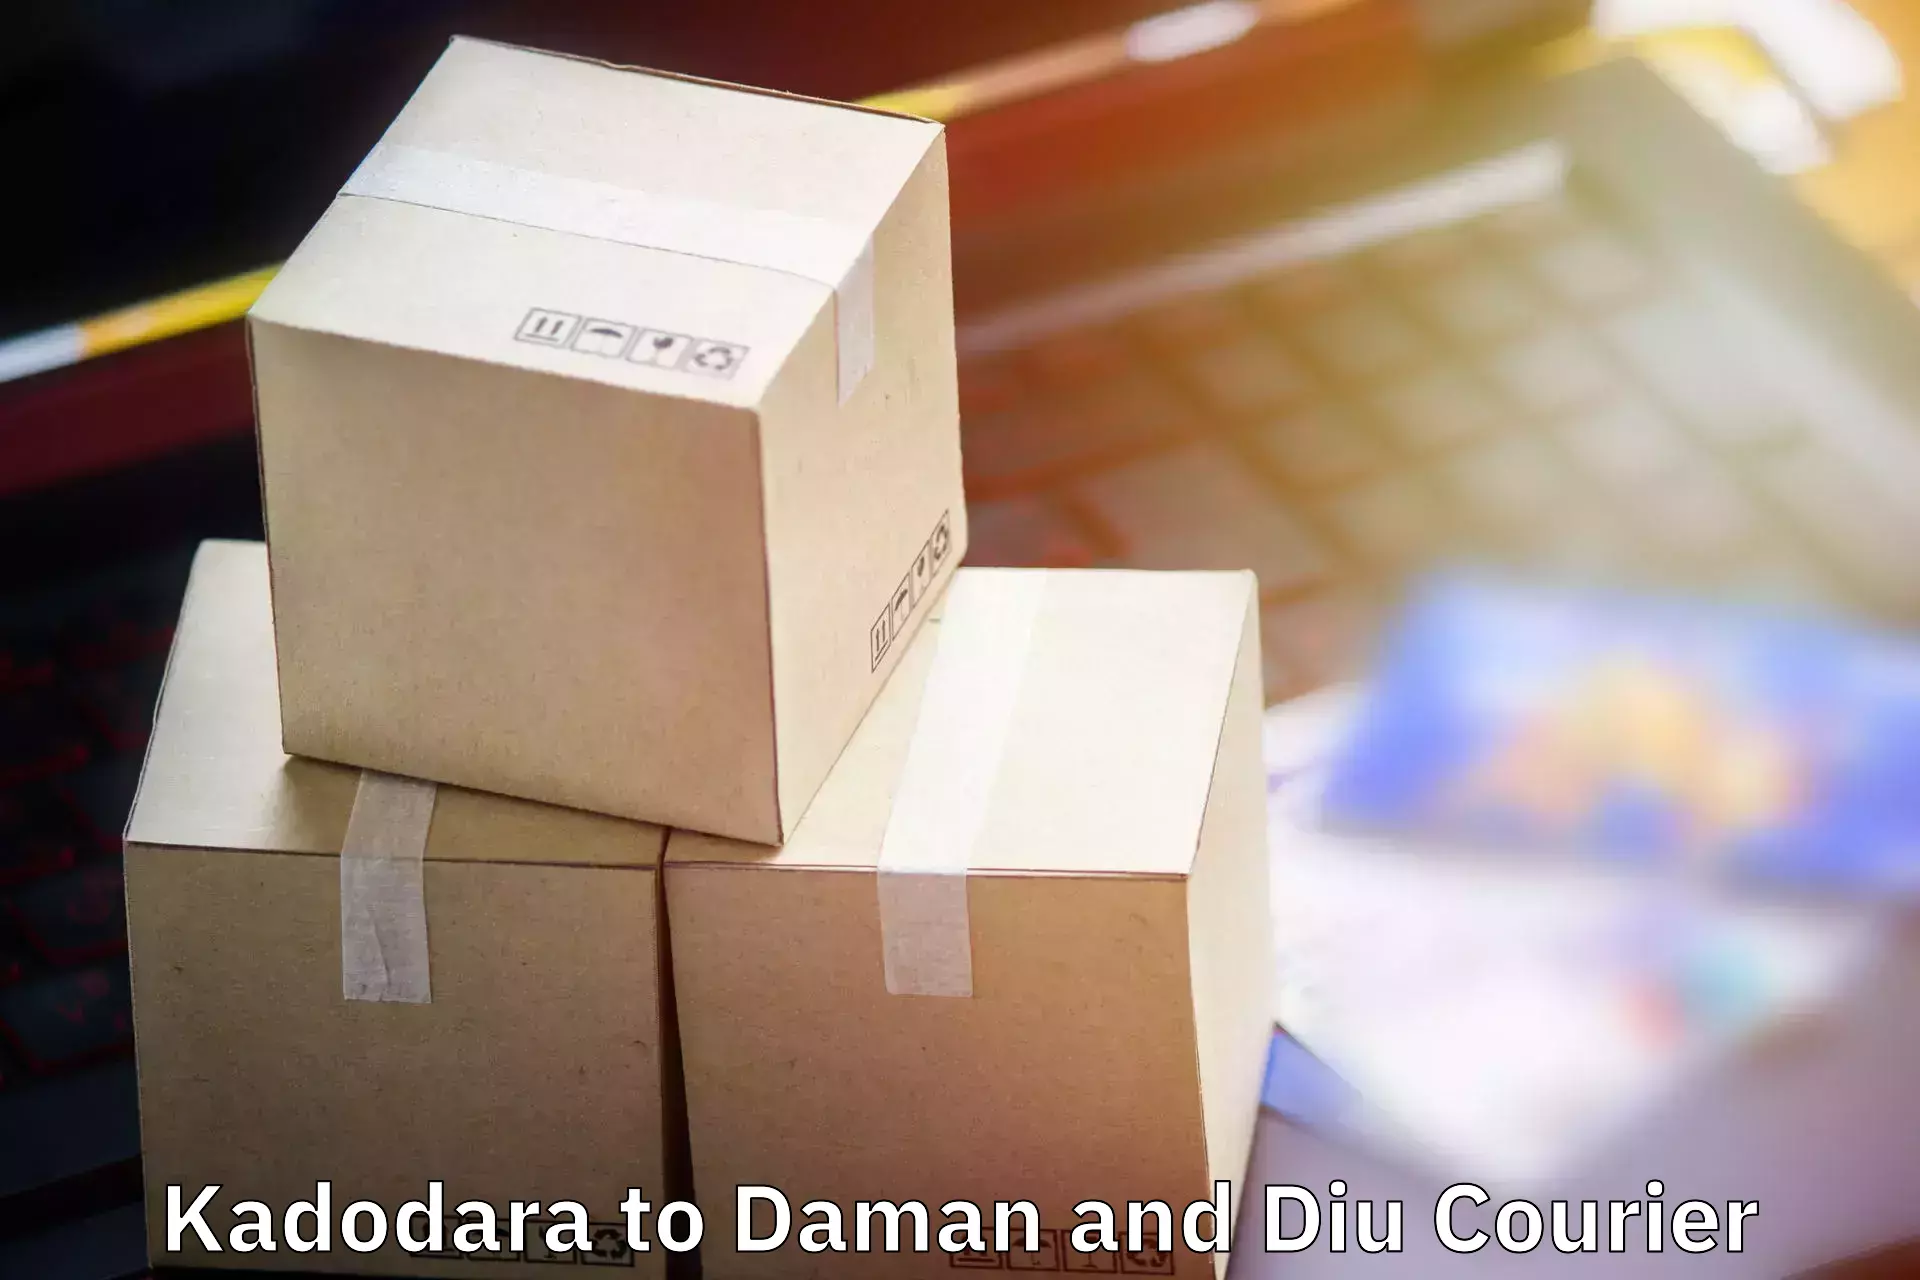 Baggage courier operations Kadodara to Daman and Diu